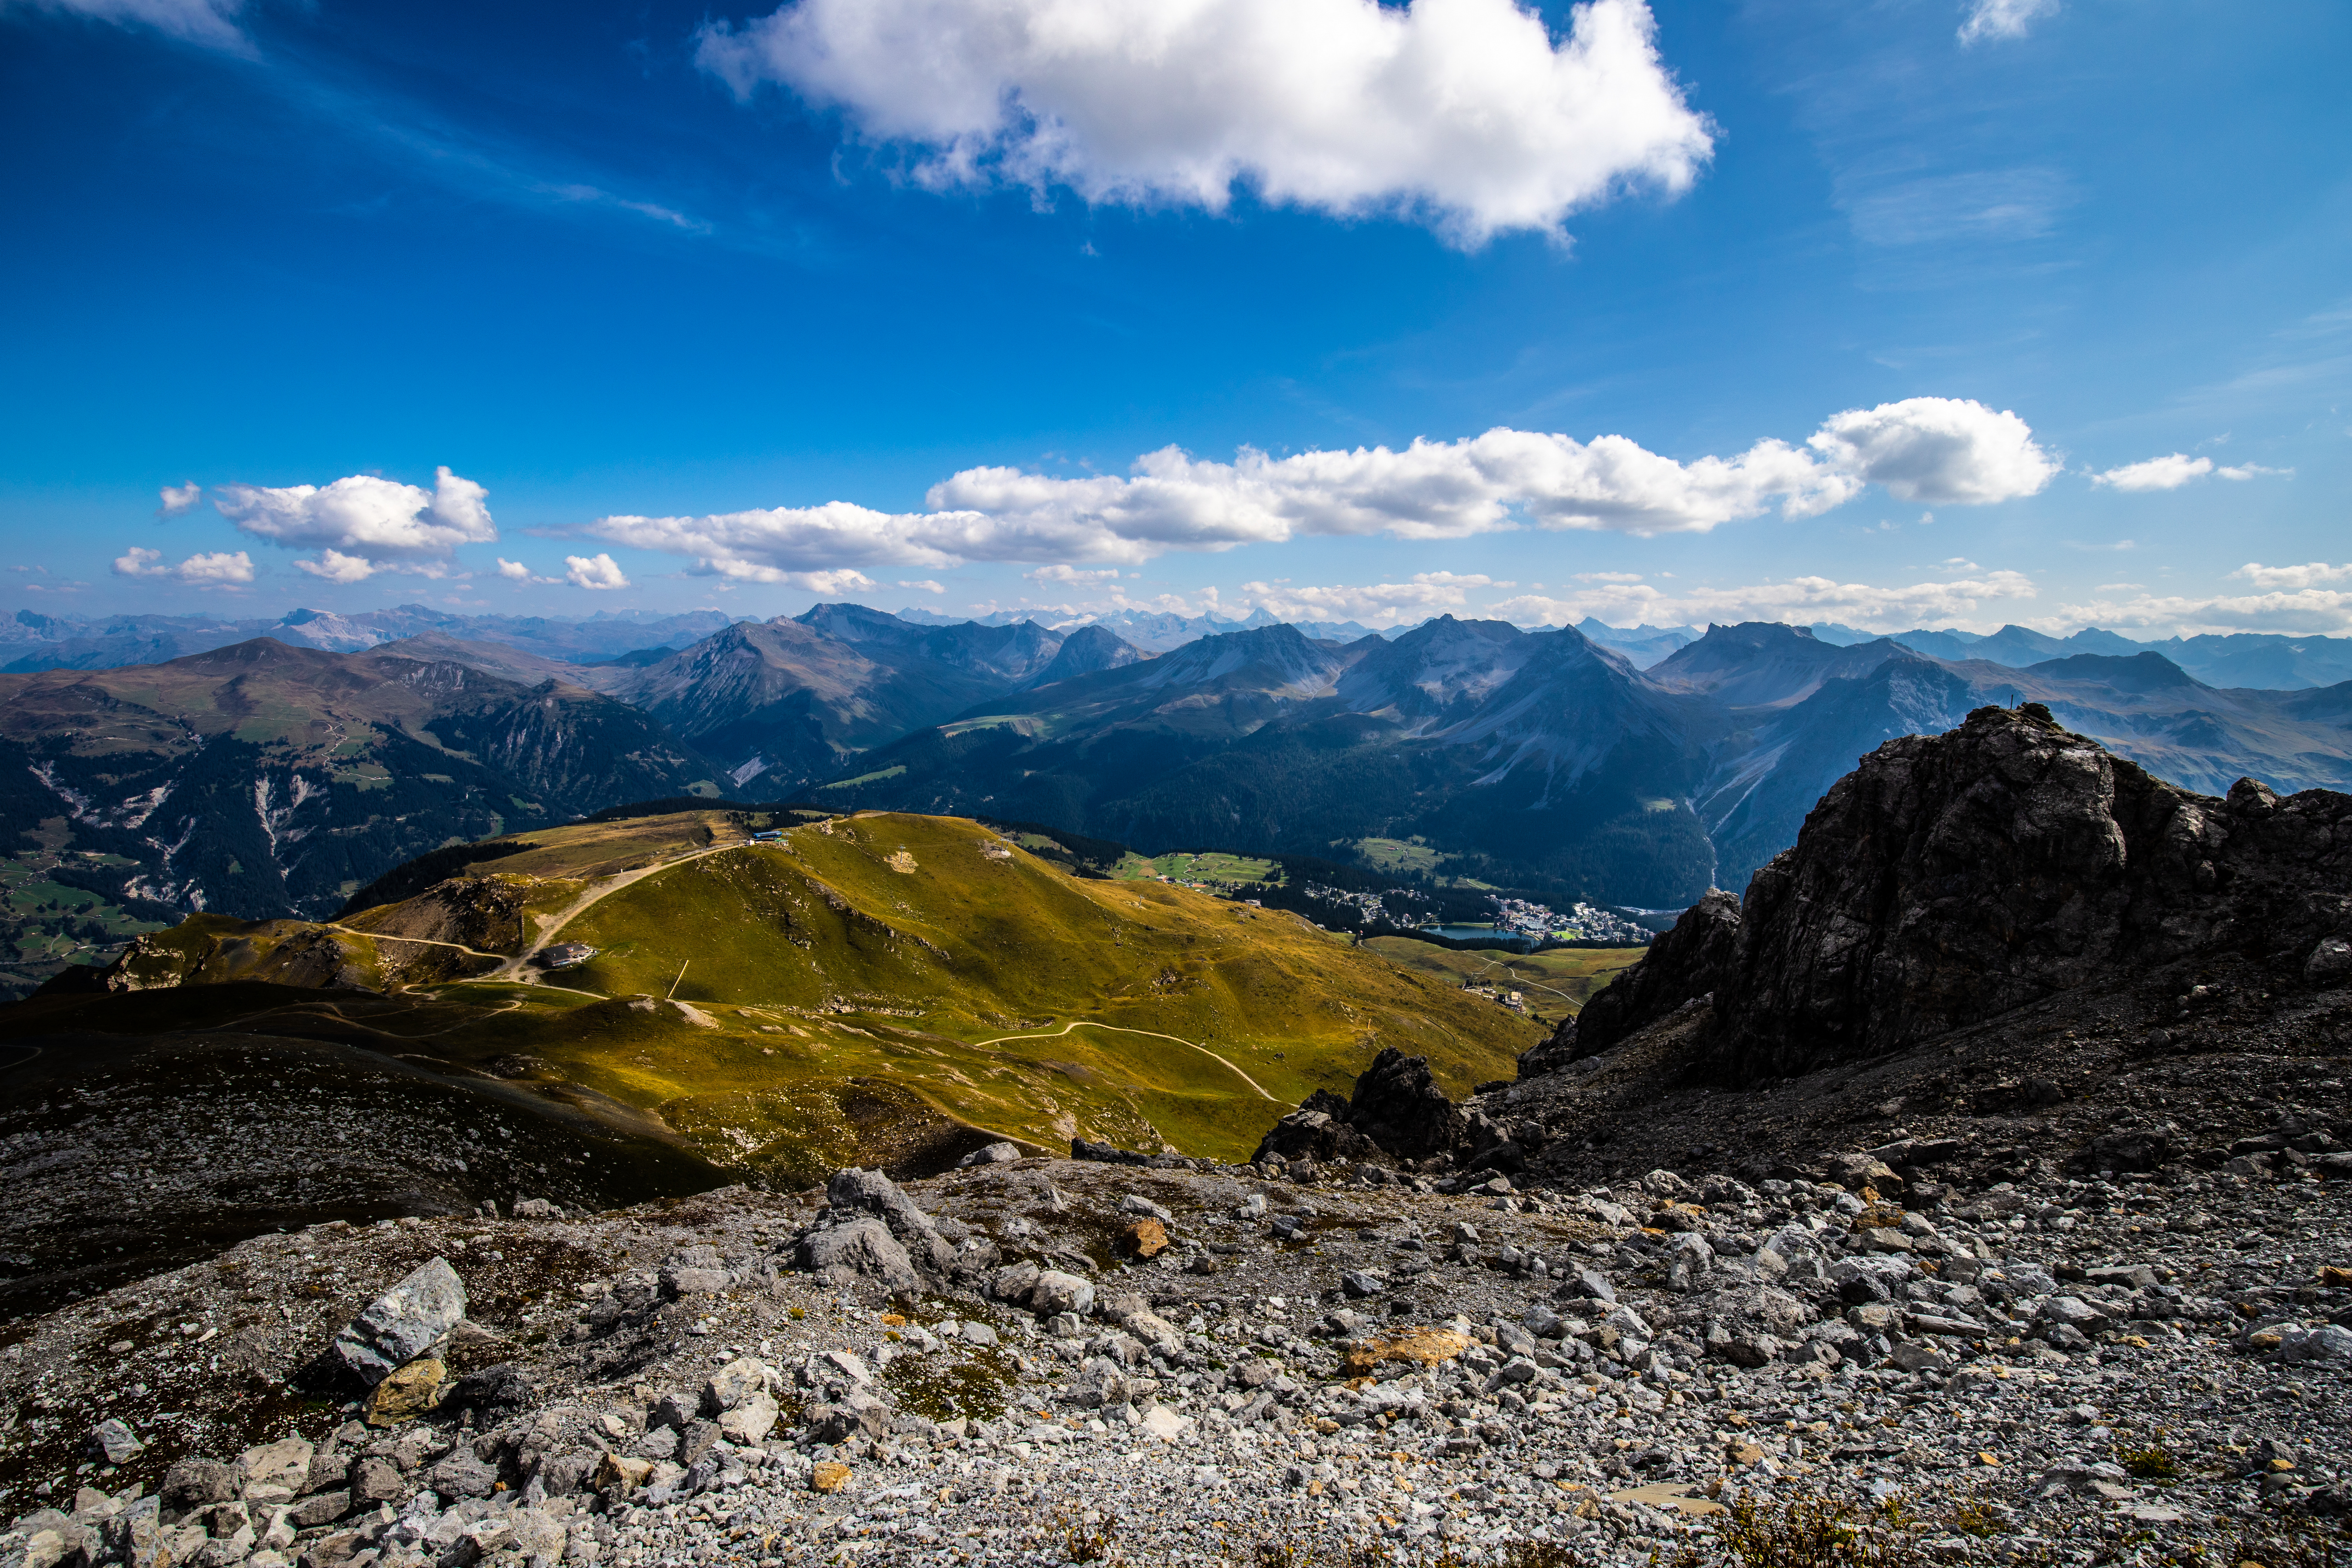 Обои для рабочего стола Альпы Швейцария Arosa Горы Природа Камень облако 5120x3413 альп гора Камни Облака облачно